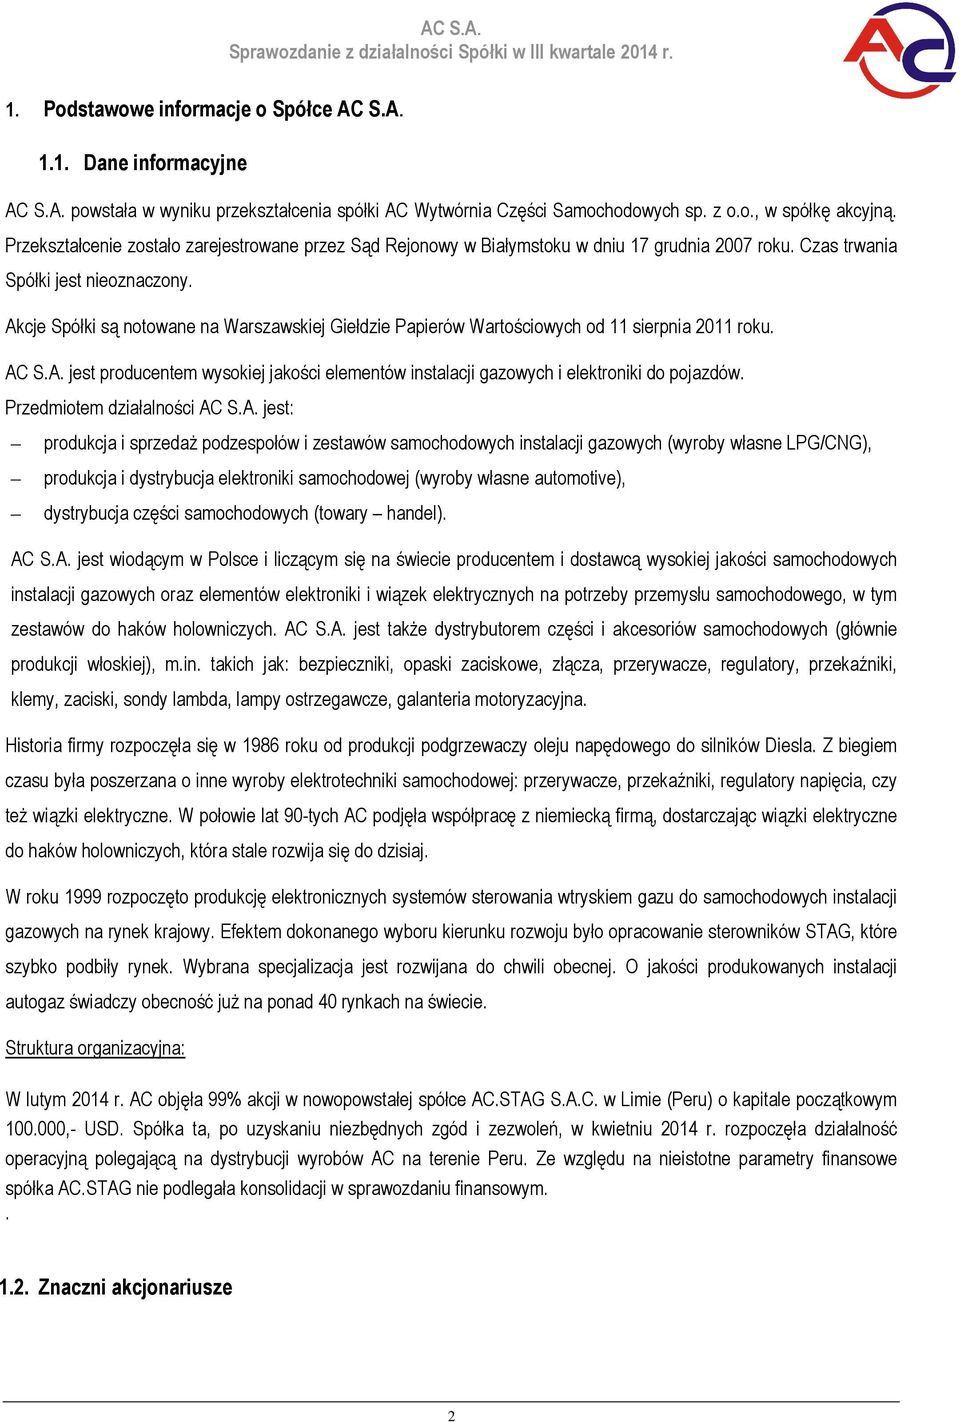 Akcje Spółki są notowane na Warszawskiej Giełdzie Papierów Wartościowych od 11 sierpnia 2011 roku. AC S.A. jest producentem wysokiej jakości elementów instalacji gazowych i elektroniki do pojazdów.